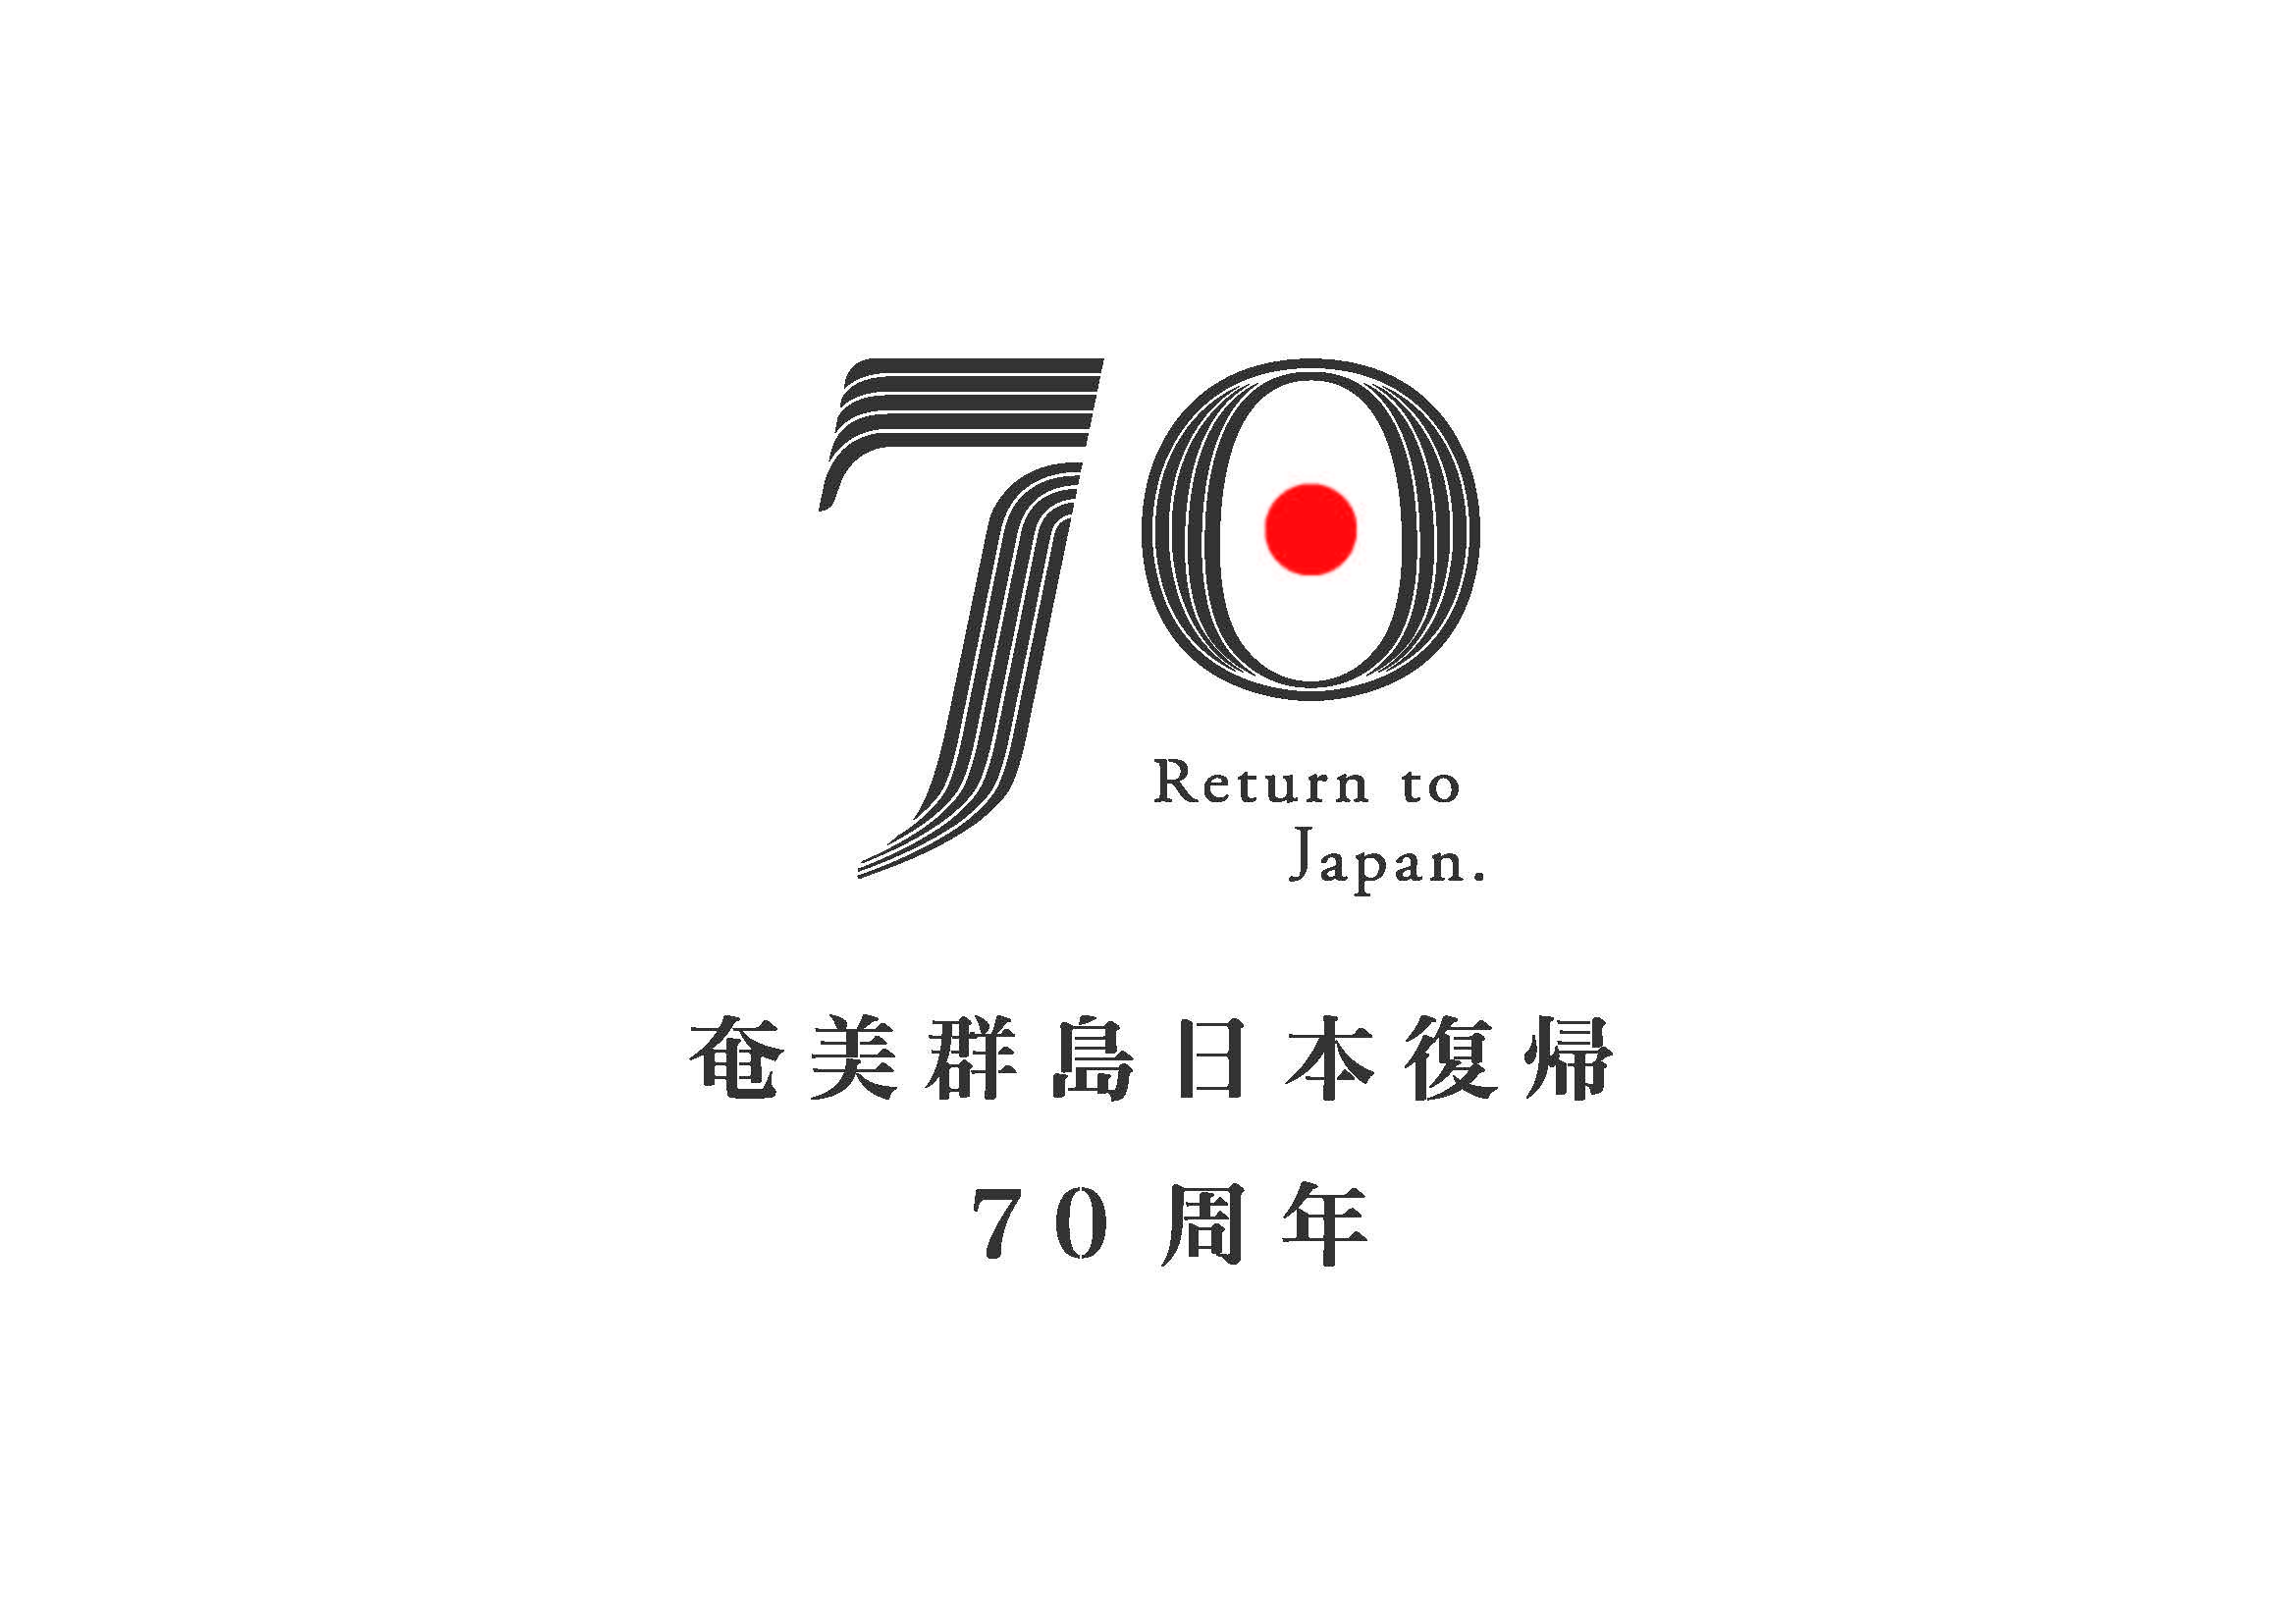 奄美群島日本復帰70周年ロゴマーク2.jpg